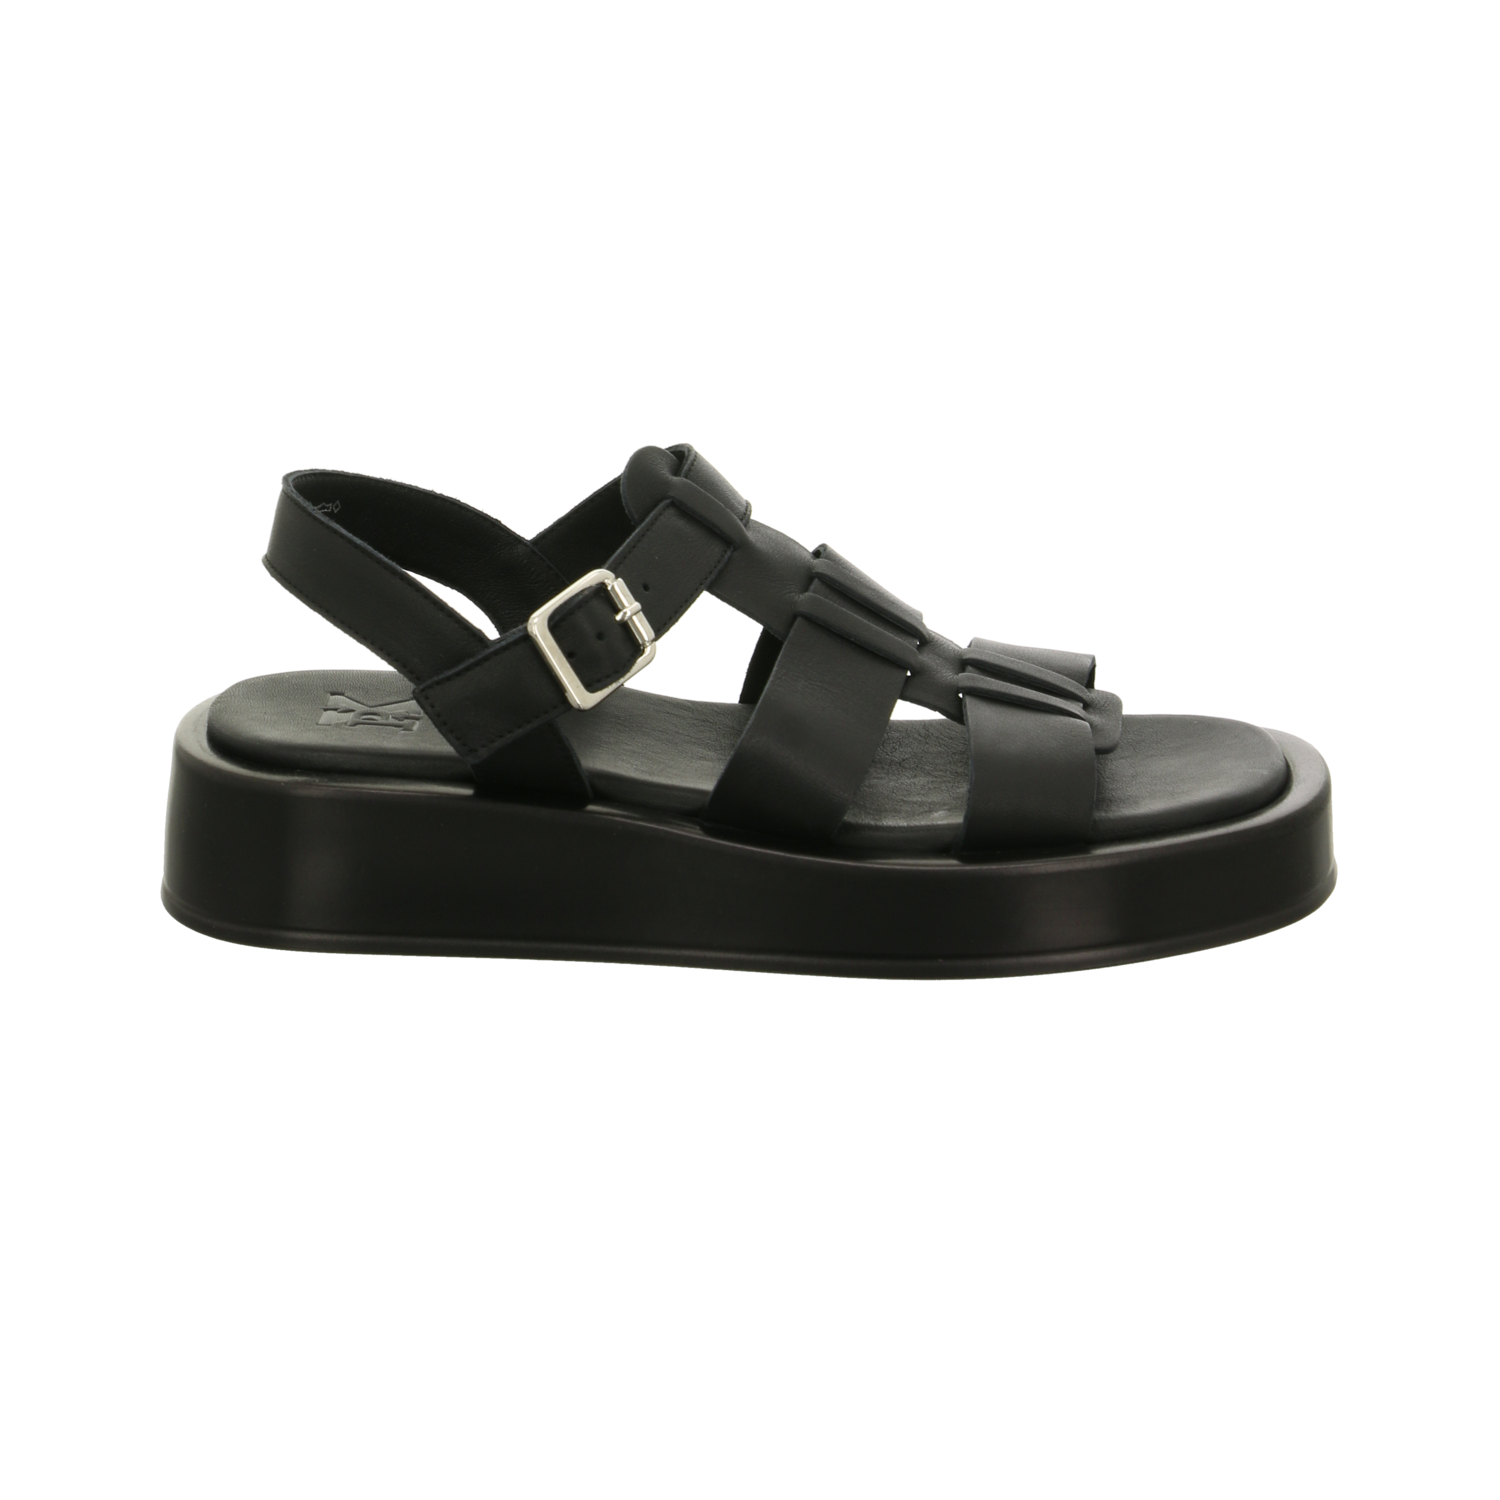 Henkelmann Sandalette bis 25 mm schwarz